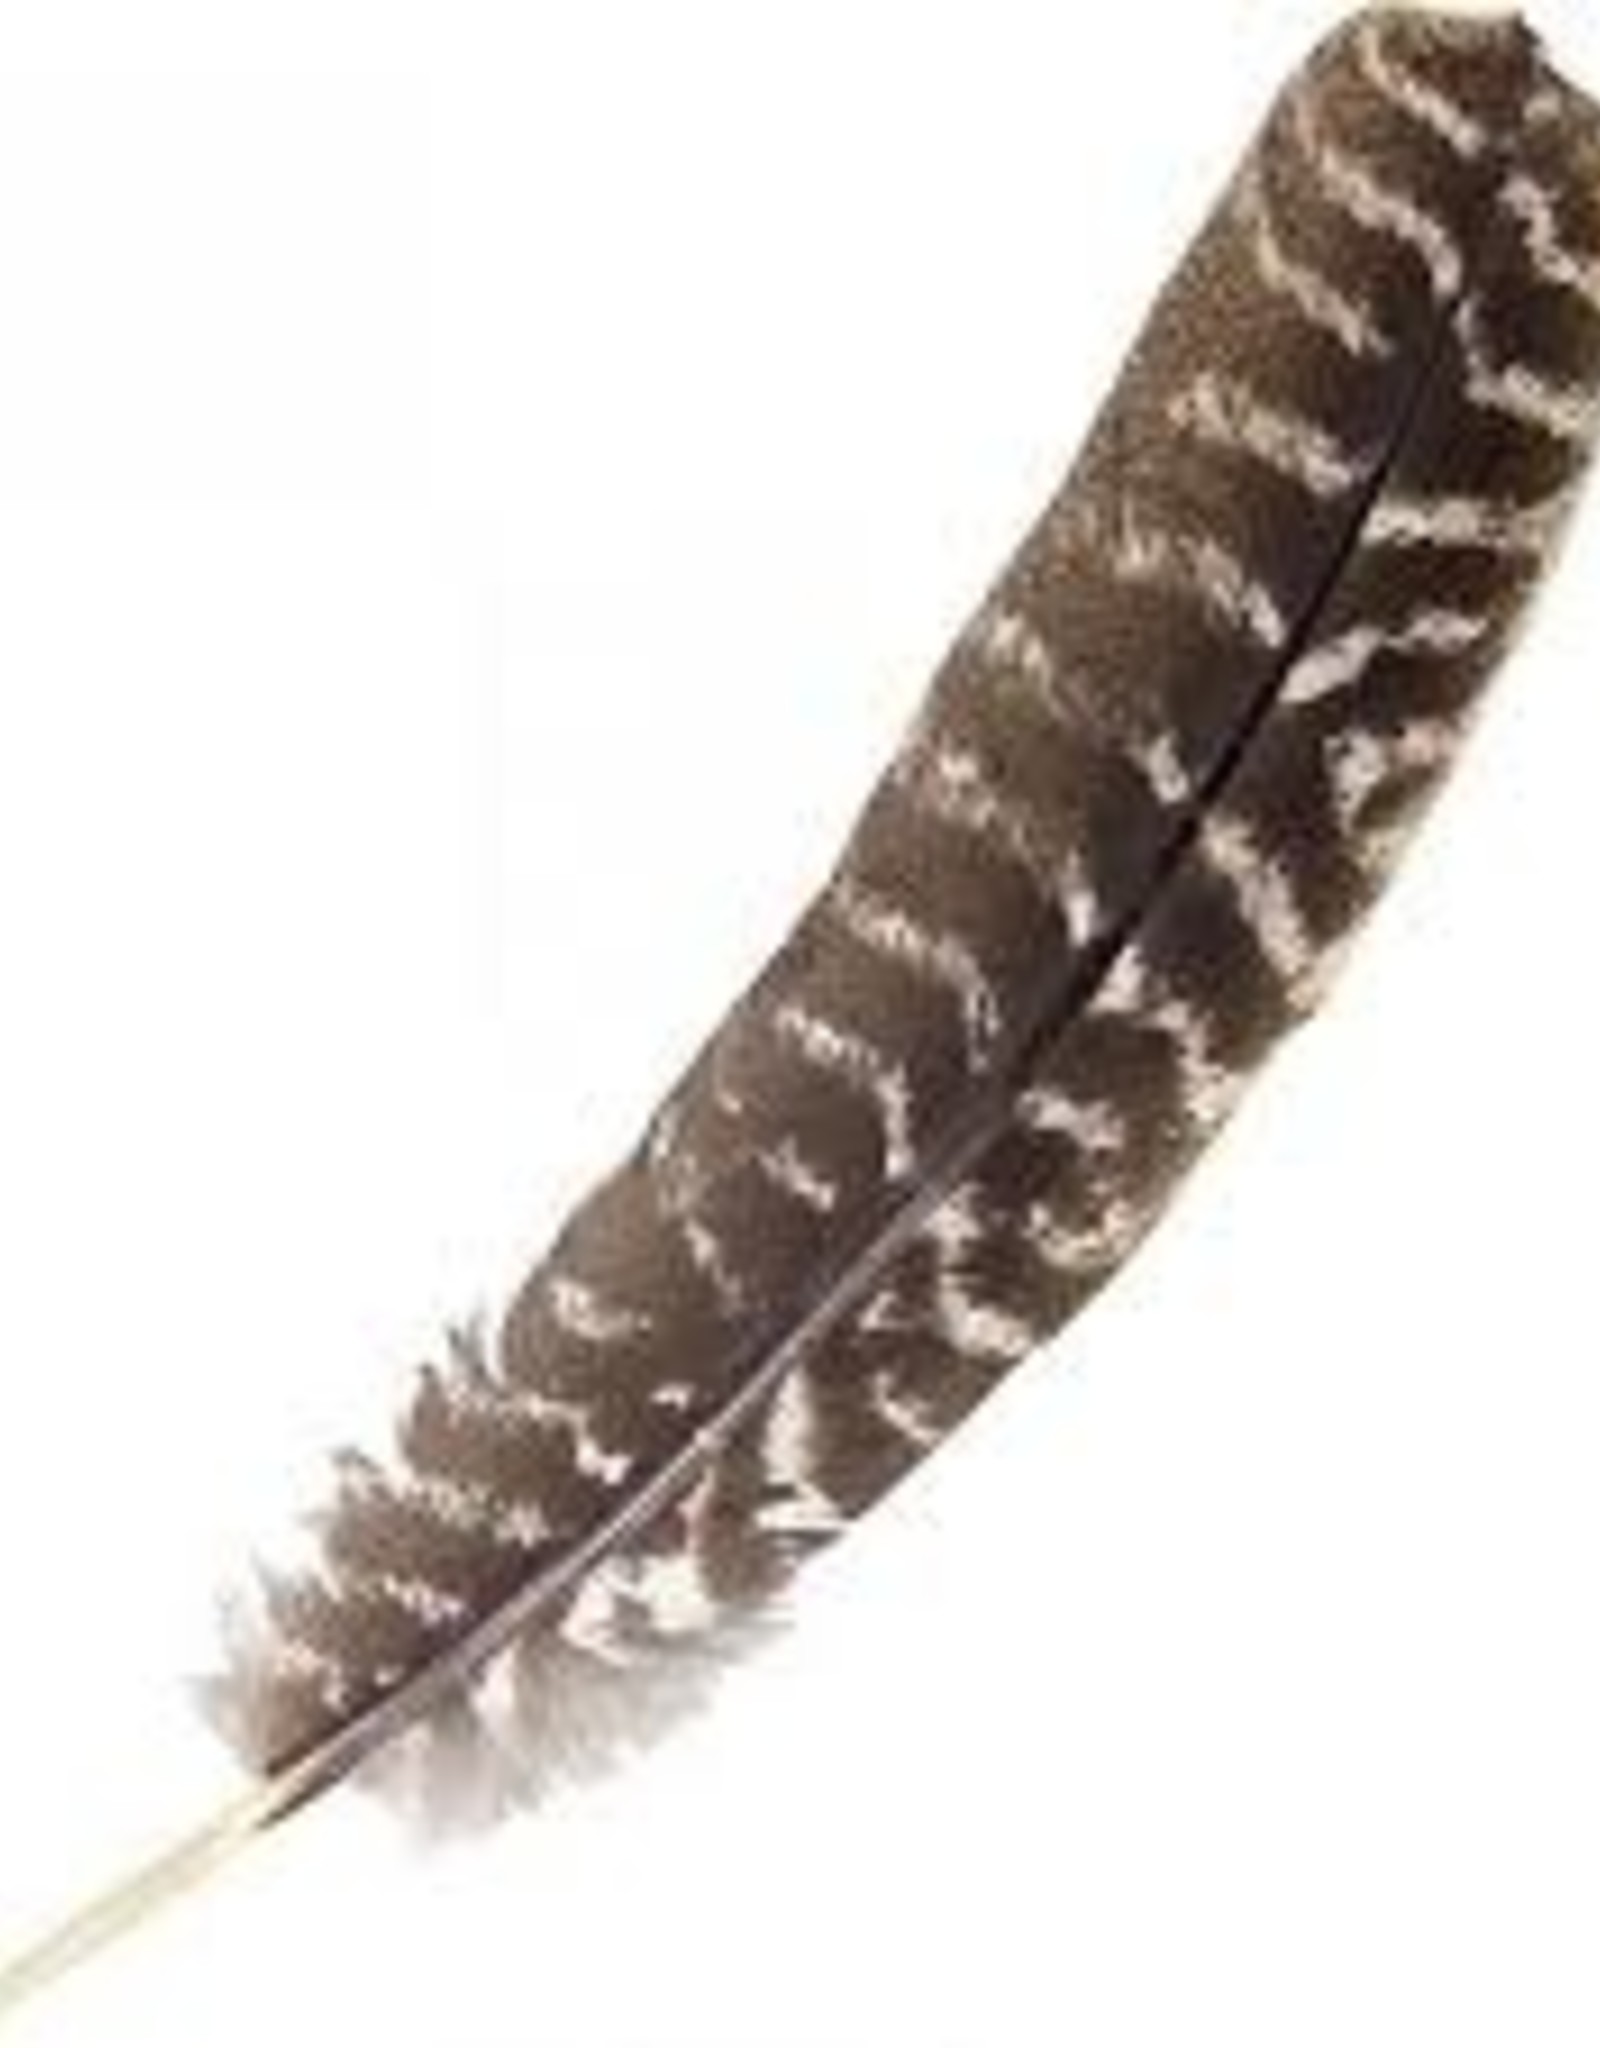 Single Turkey Feather 8-14"